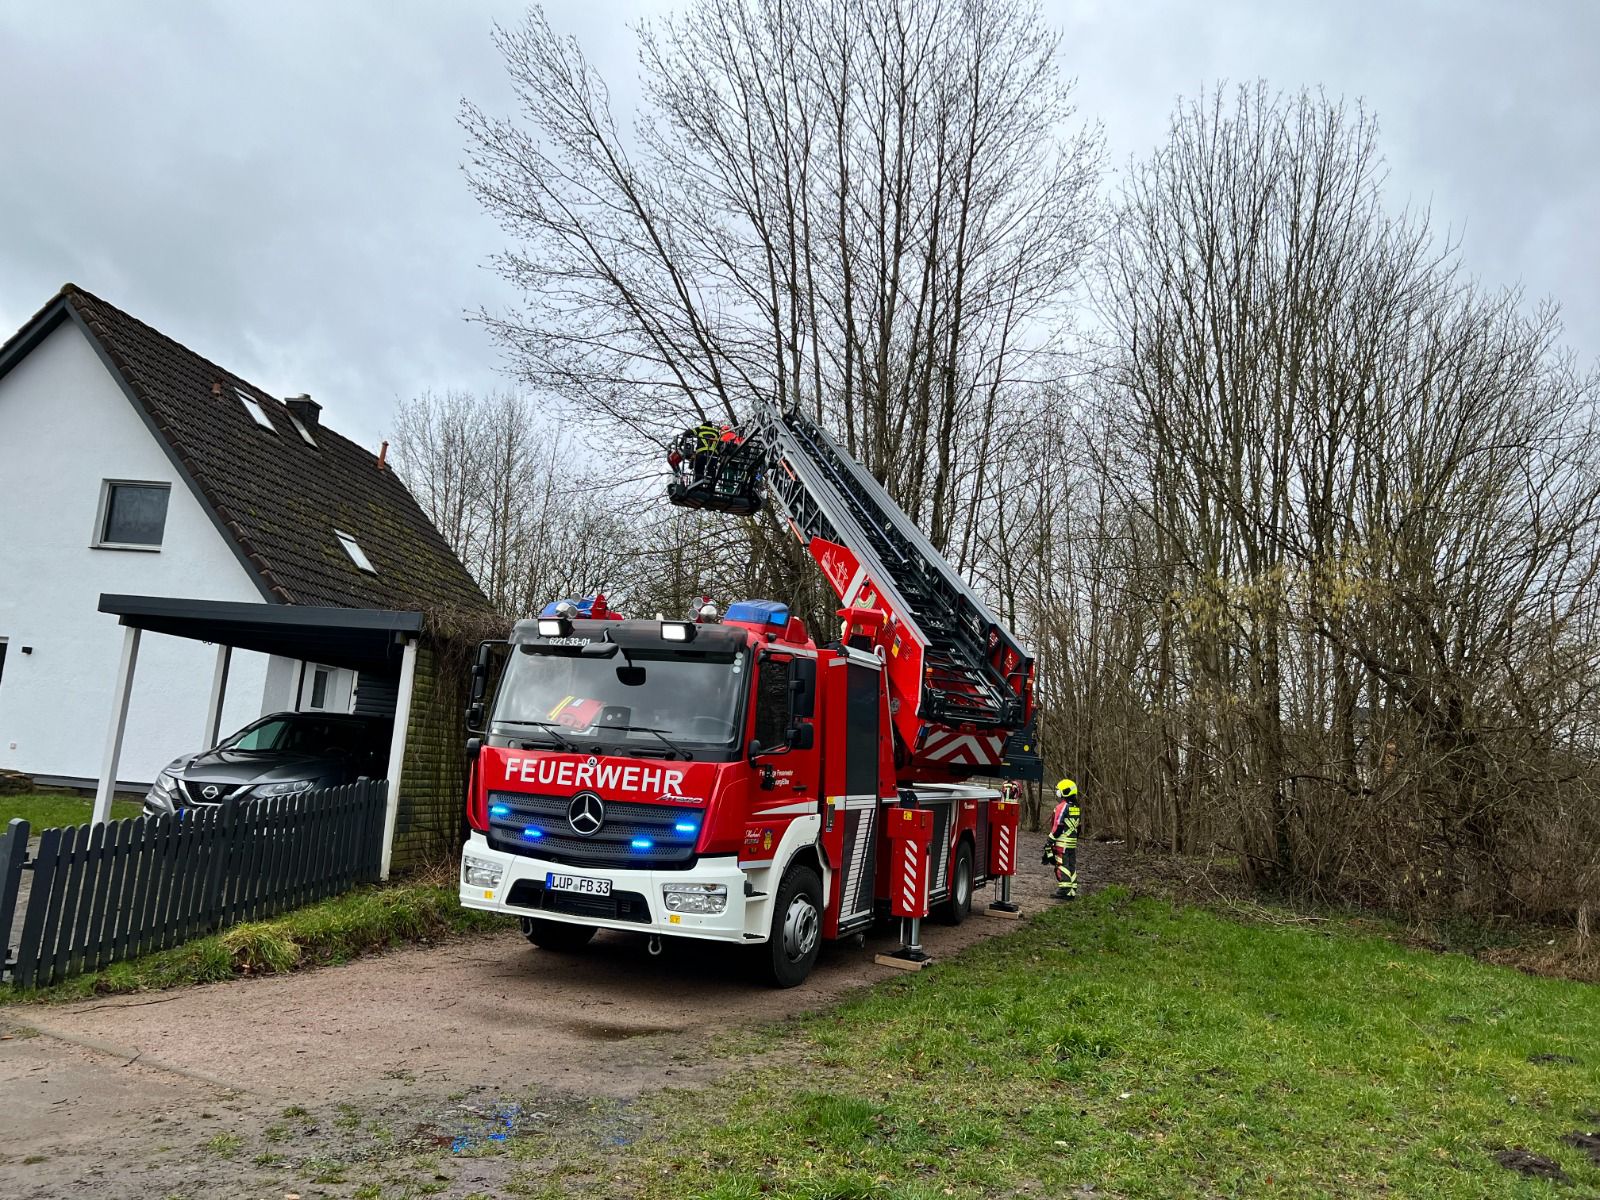 Für die Nutzung des Fotos möchten wir uns bei der Feuerwehr Lauenburg/Elbe bedanken.